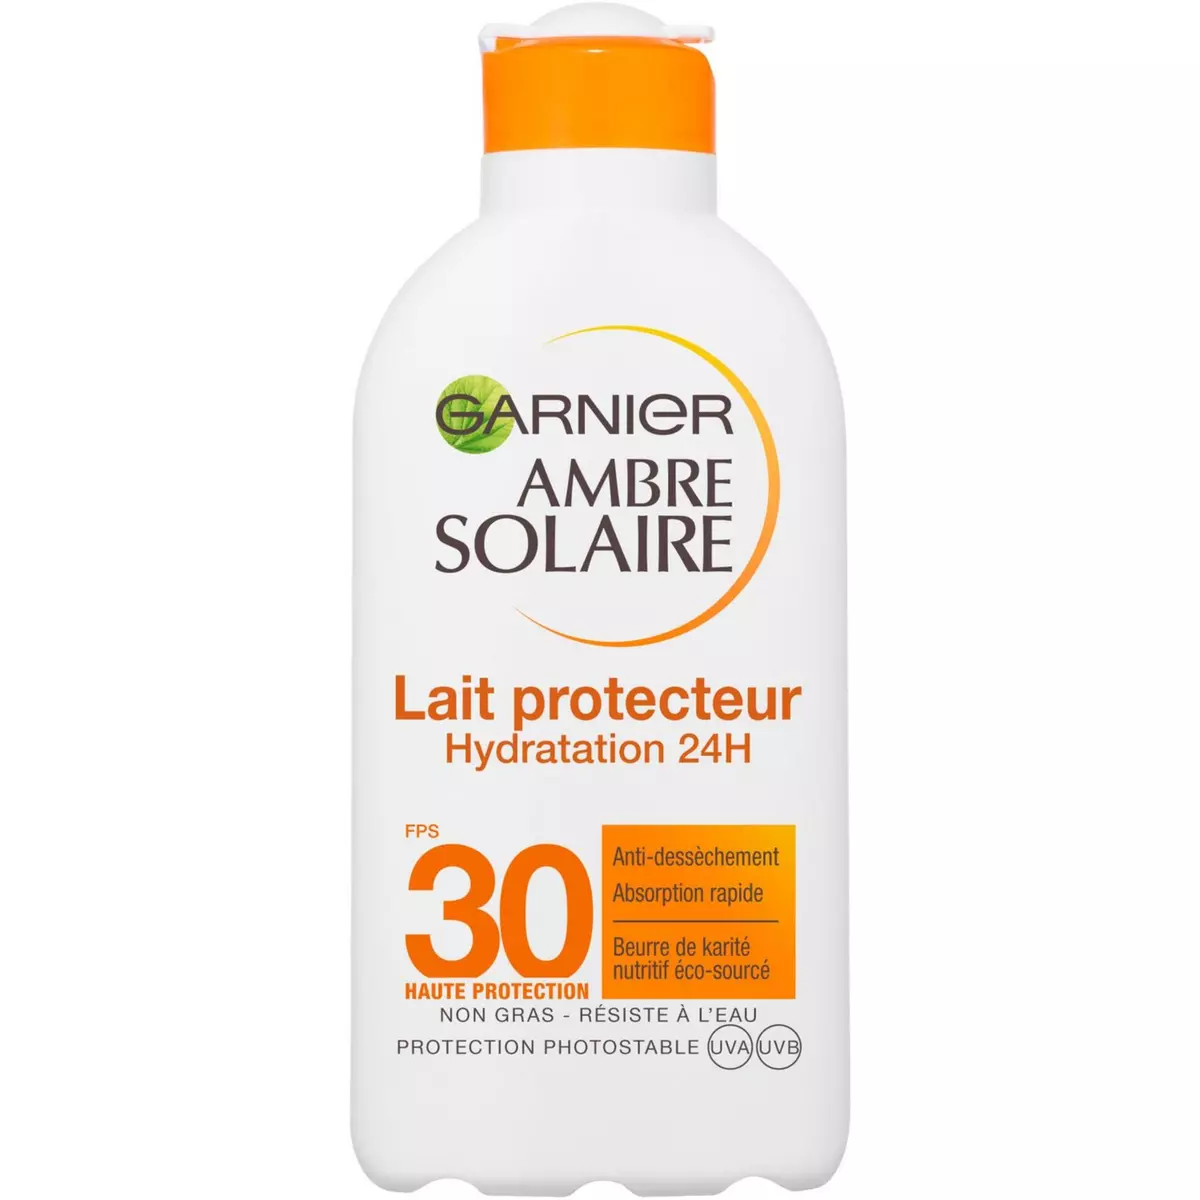 GARNIER Ambre Solaire Lait protecteur hydratation 24h SPF30 200ml